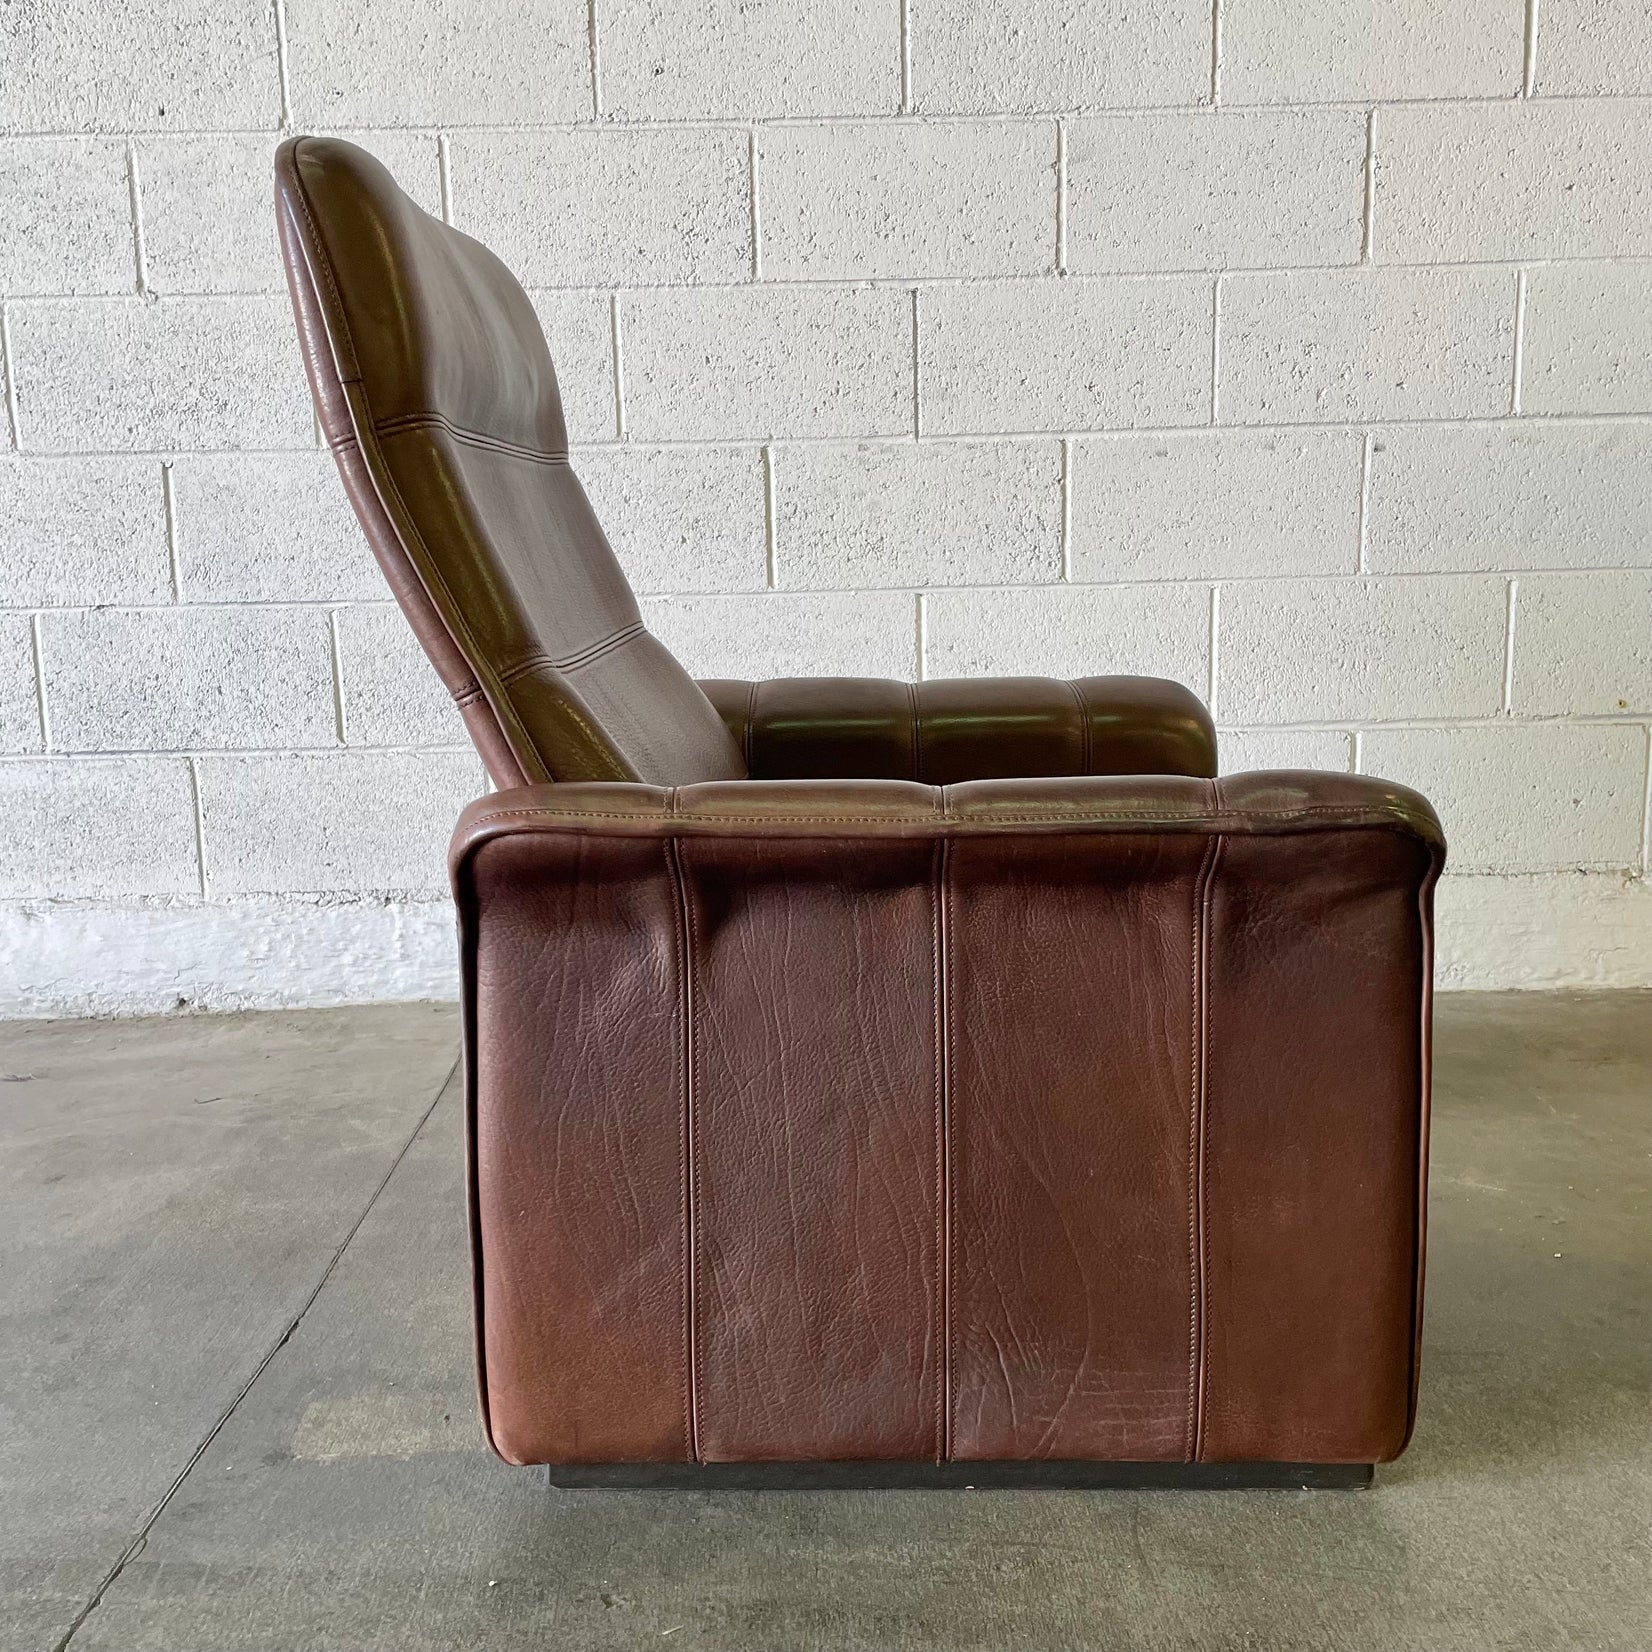 De Sede DS-50 Chocolate Brown Recliner Chair